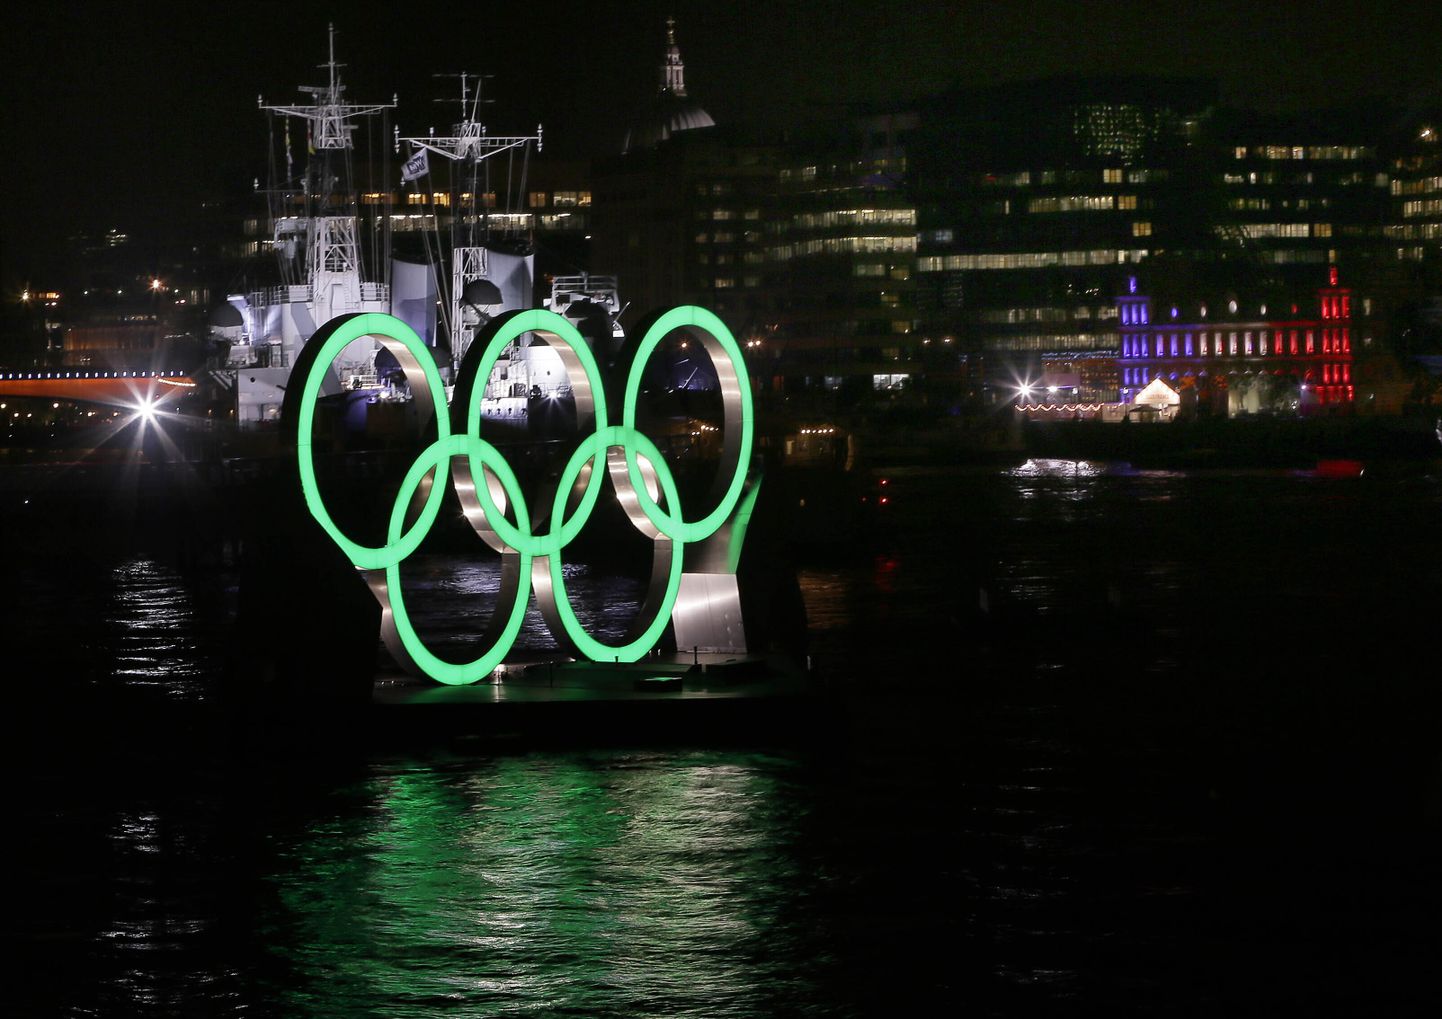 Olümpiarõngas Thamesi jõel Londonis. Foto on illustratiivne.